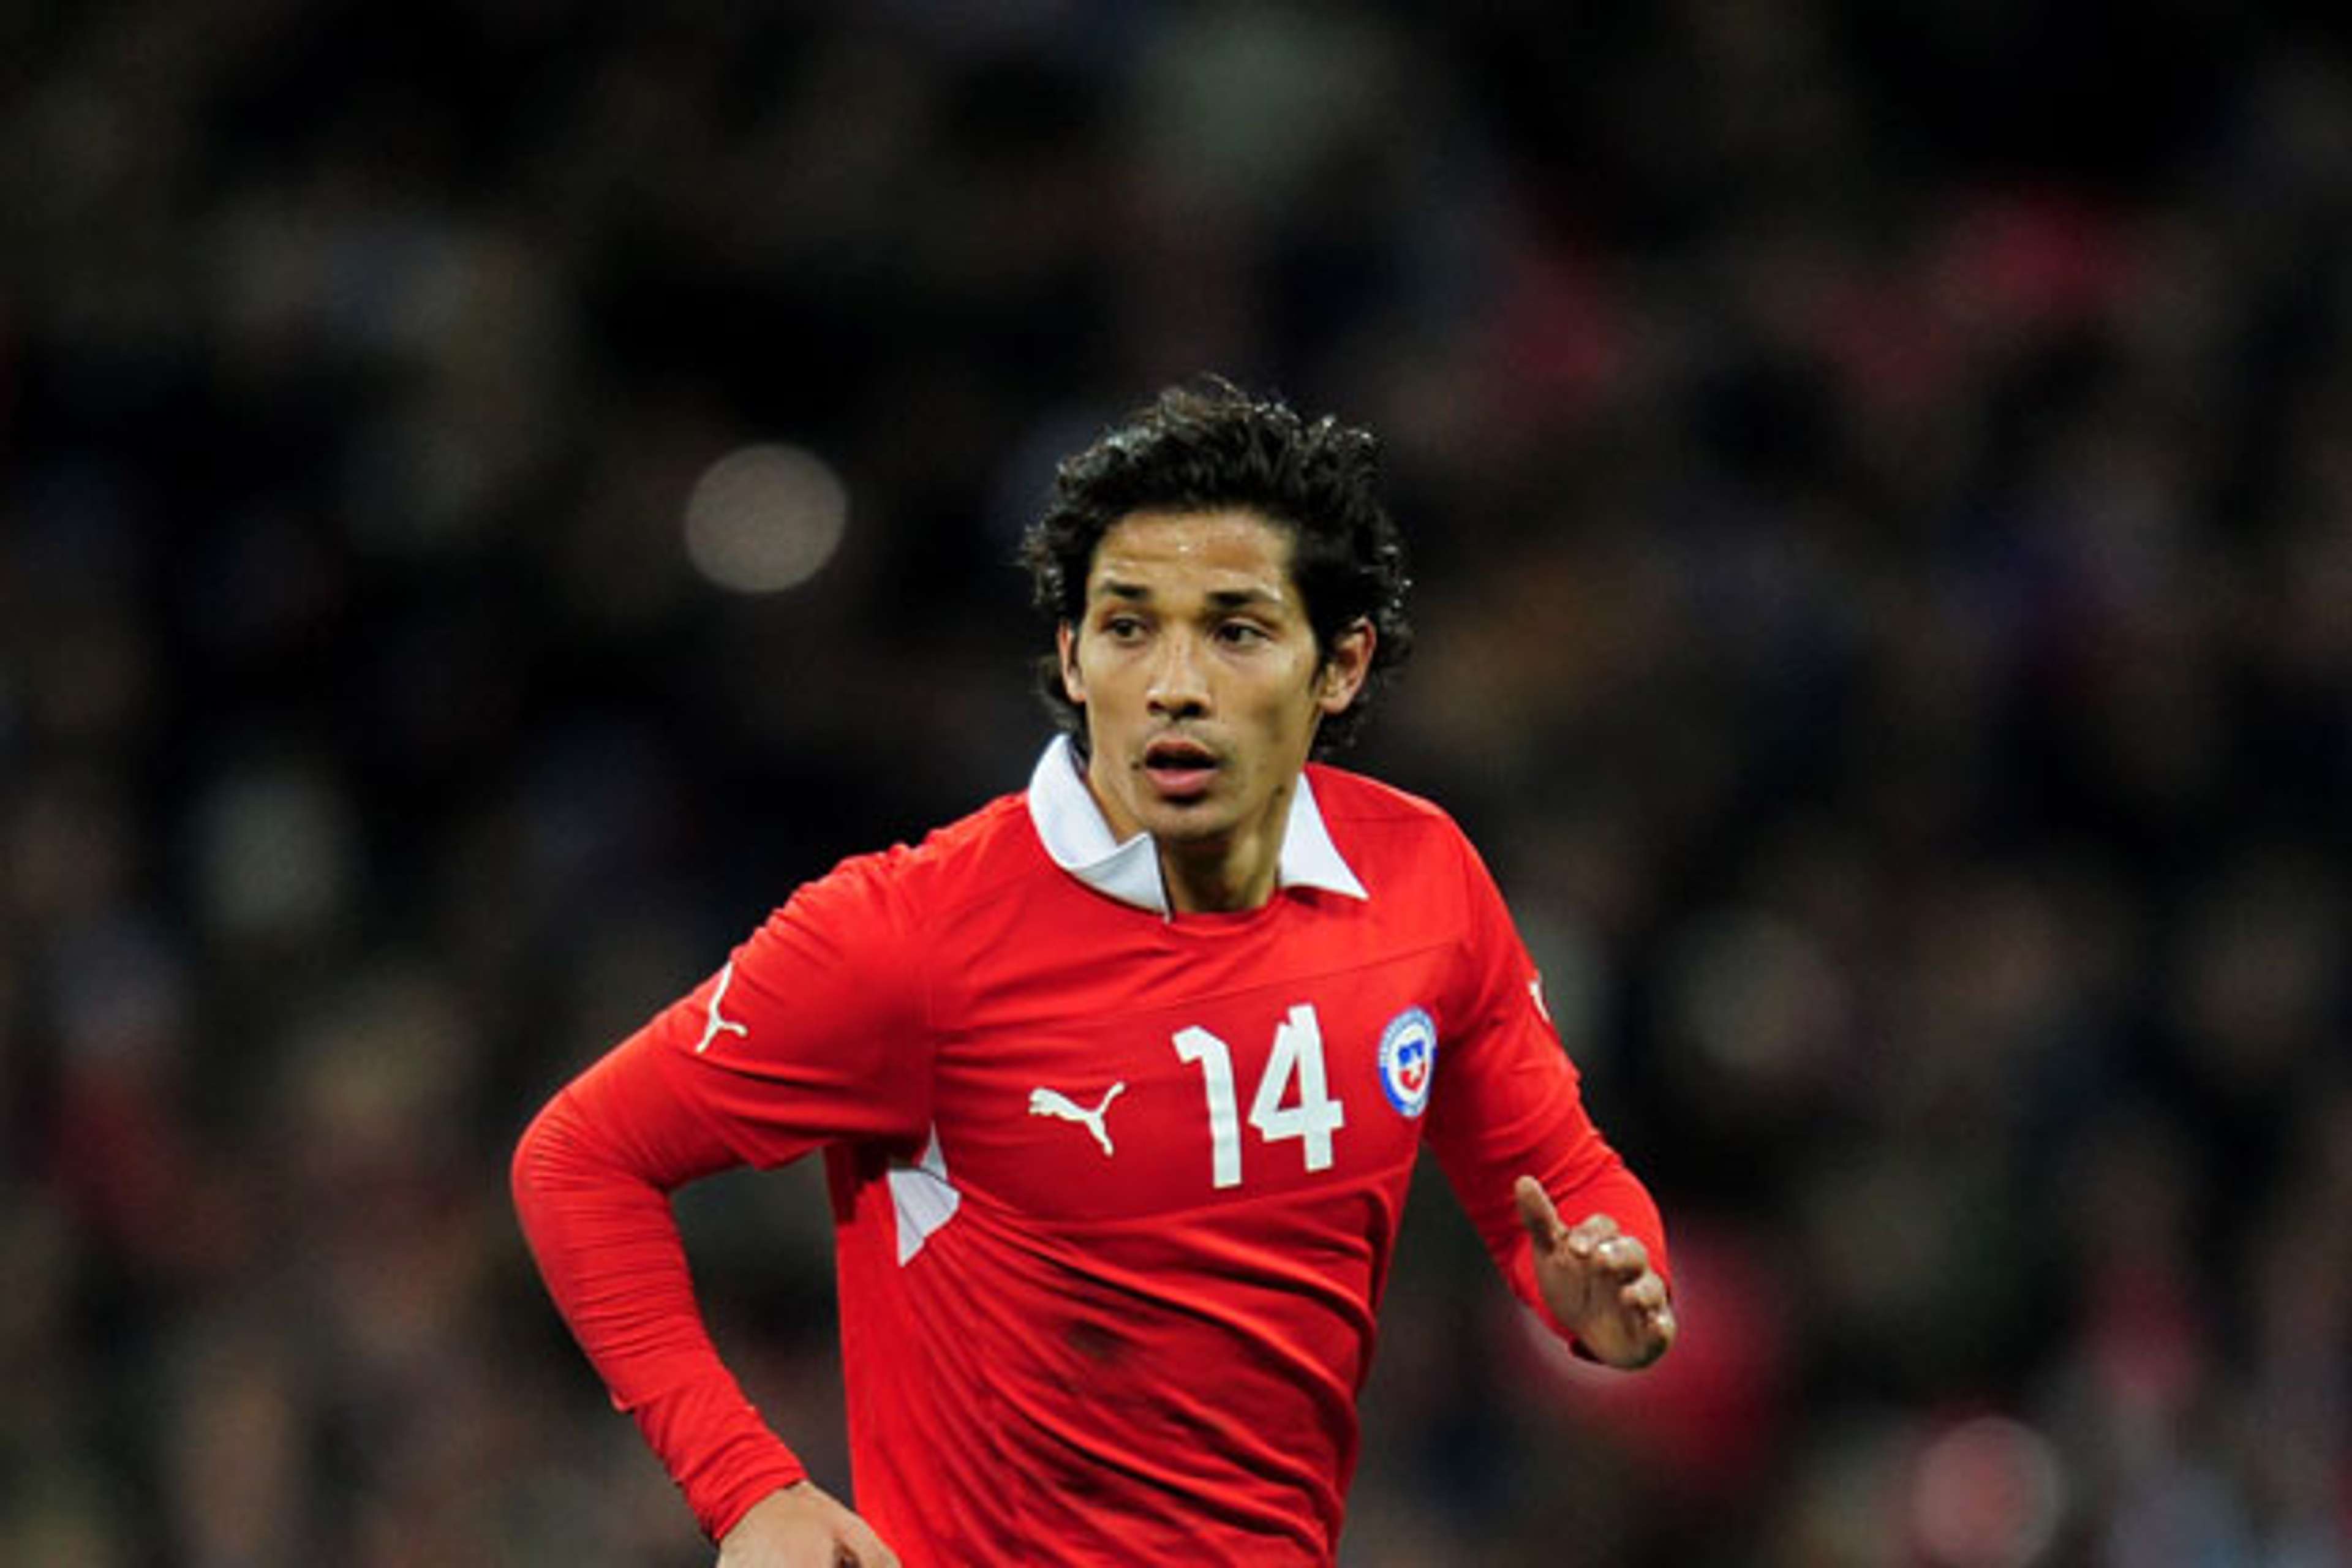 Chile midfielder Matias Fernandez